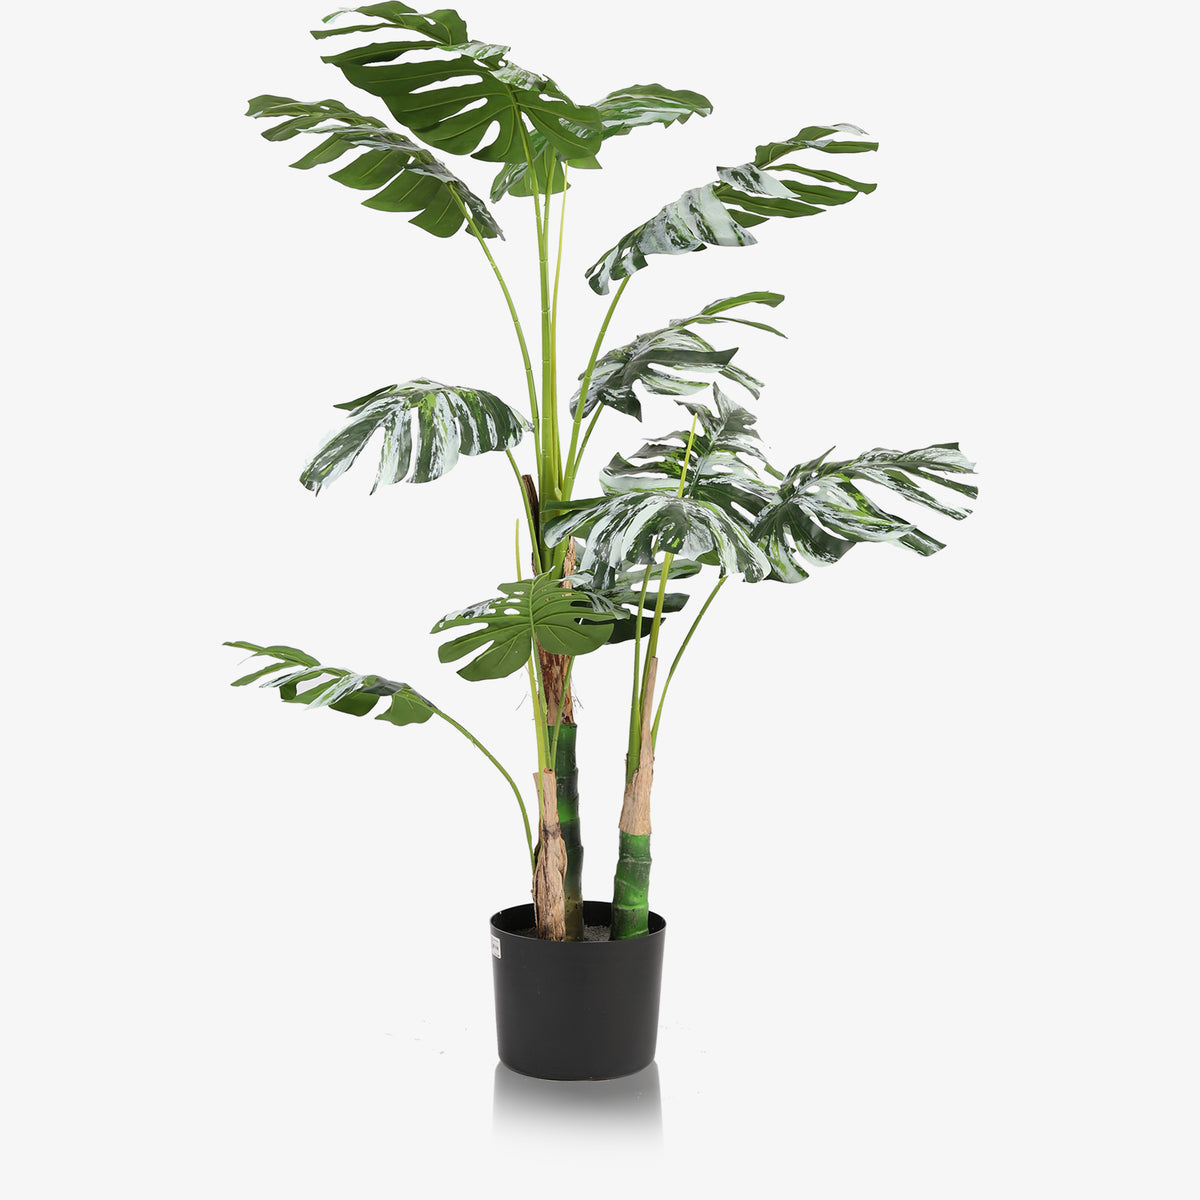 Artificial plant